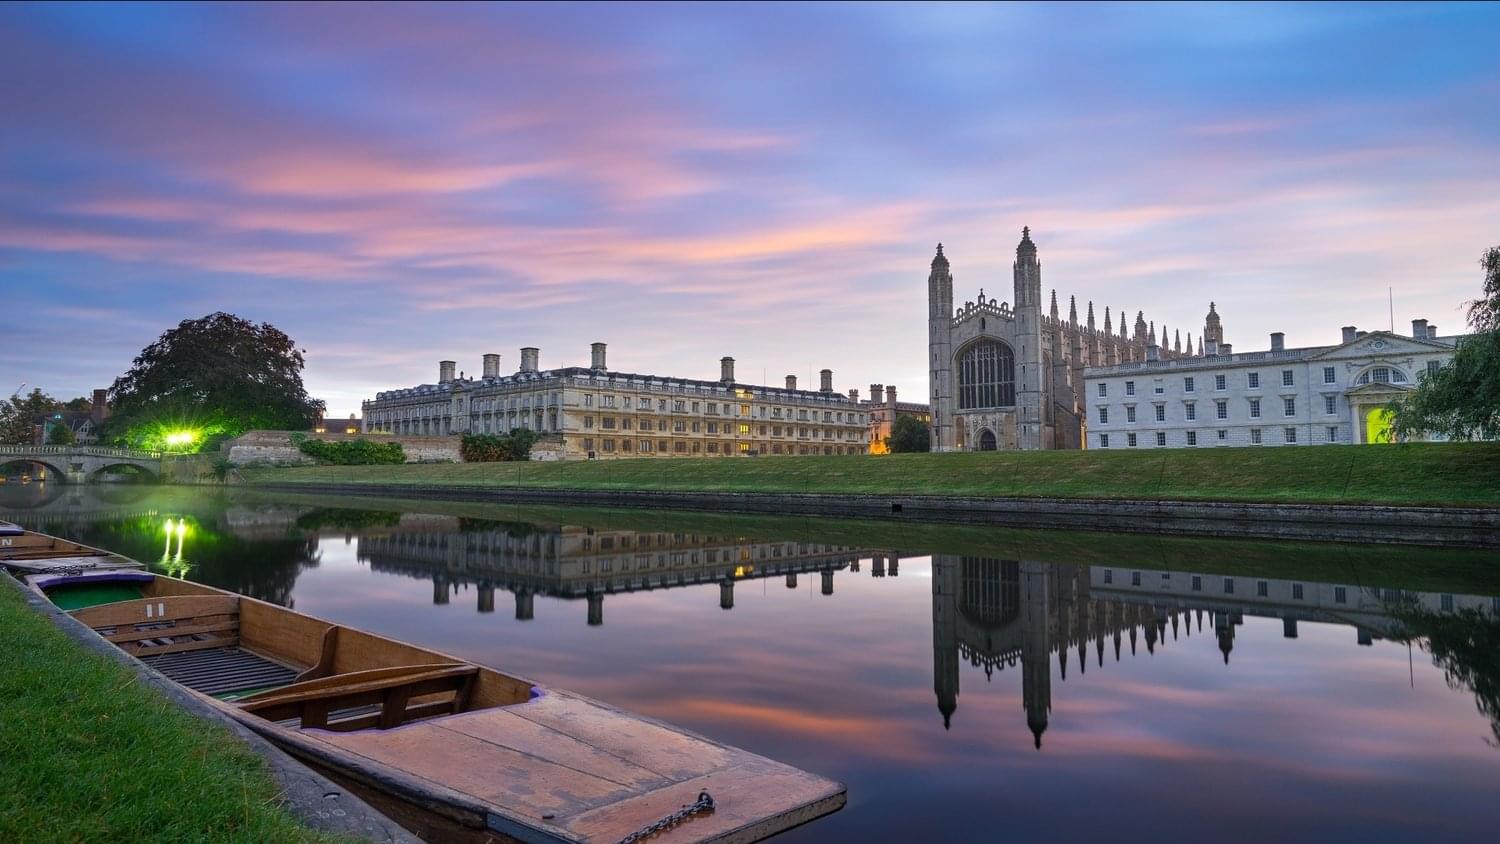 University of Cambridge Overview